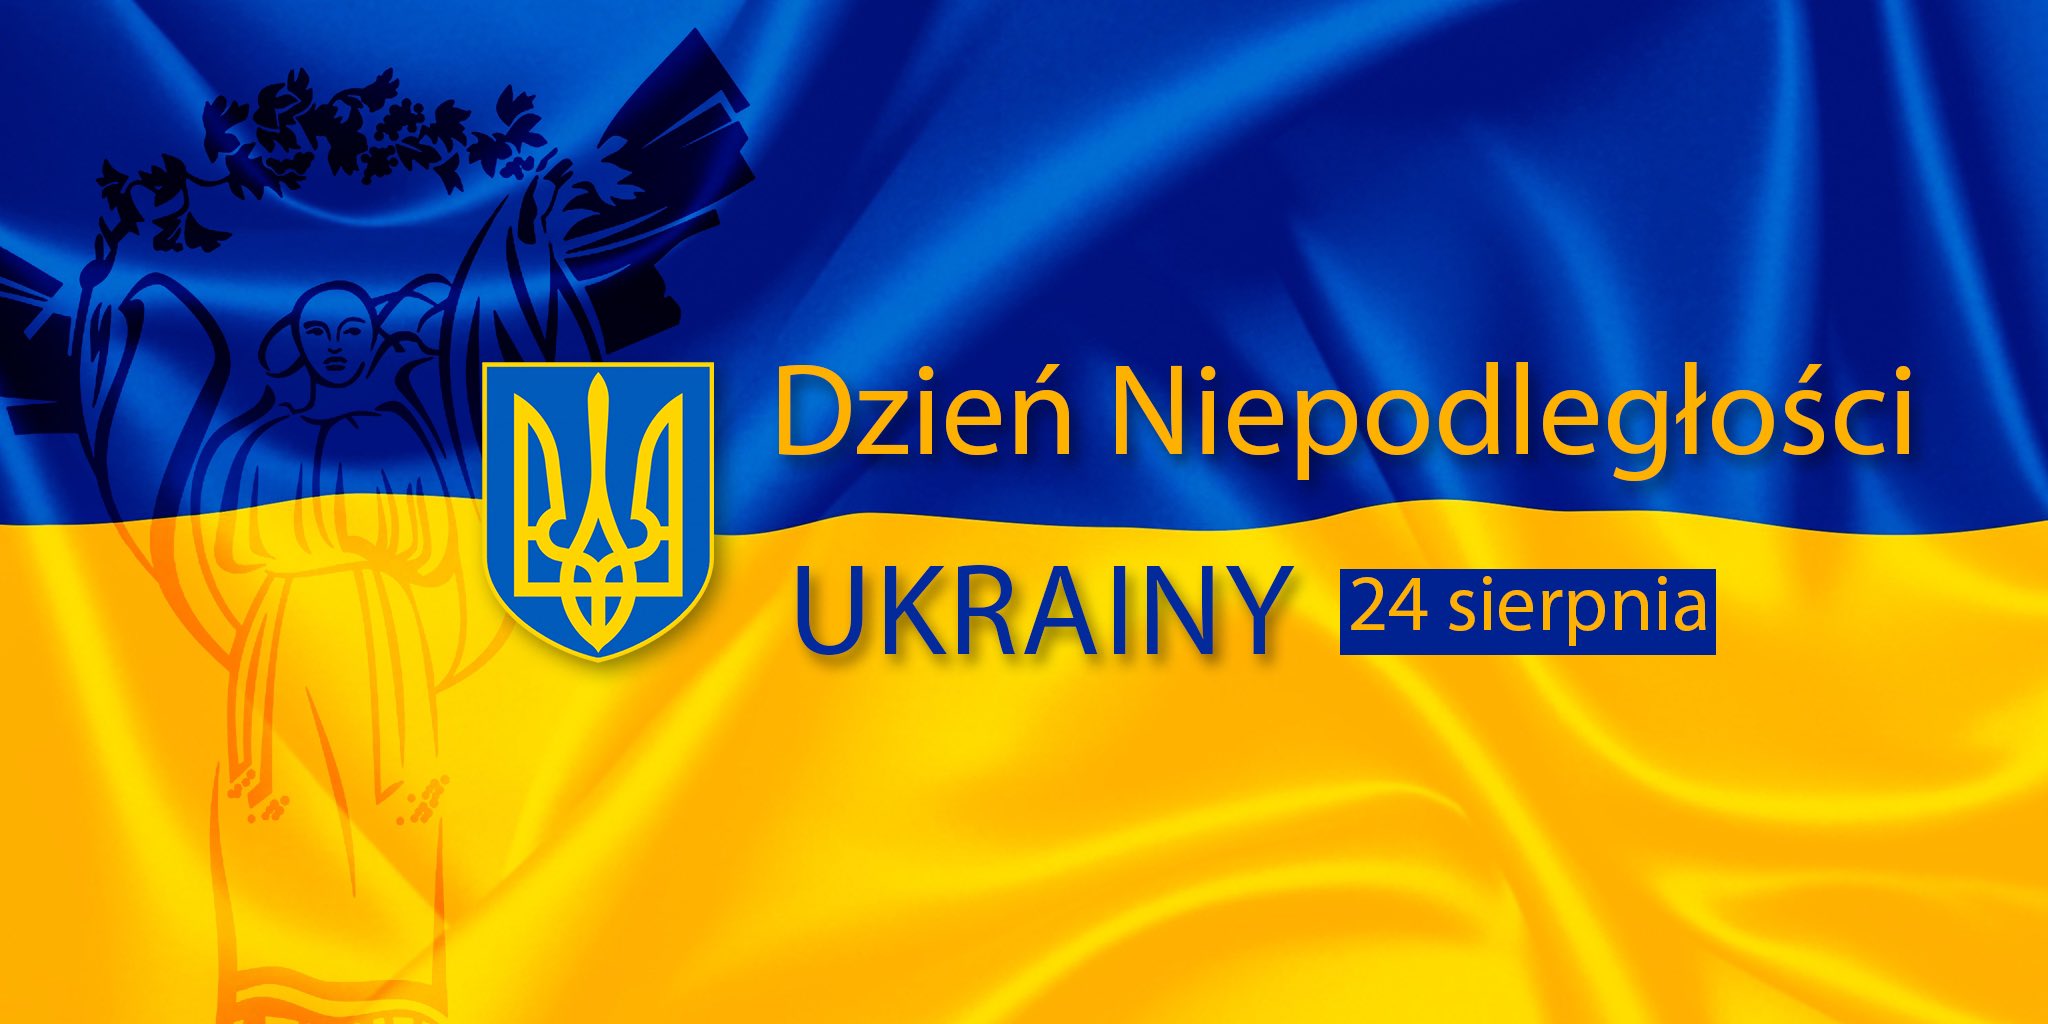 24 sierpnia - Dzień Niepodległości Ukrainy